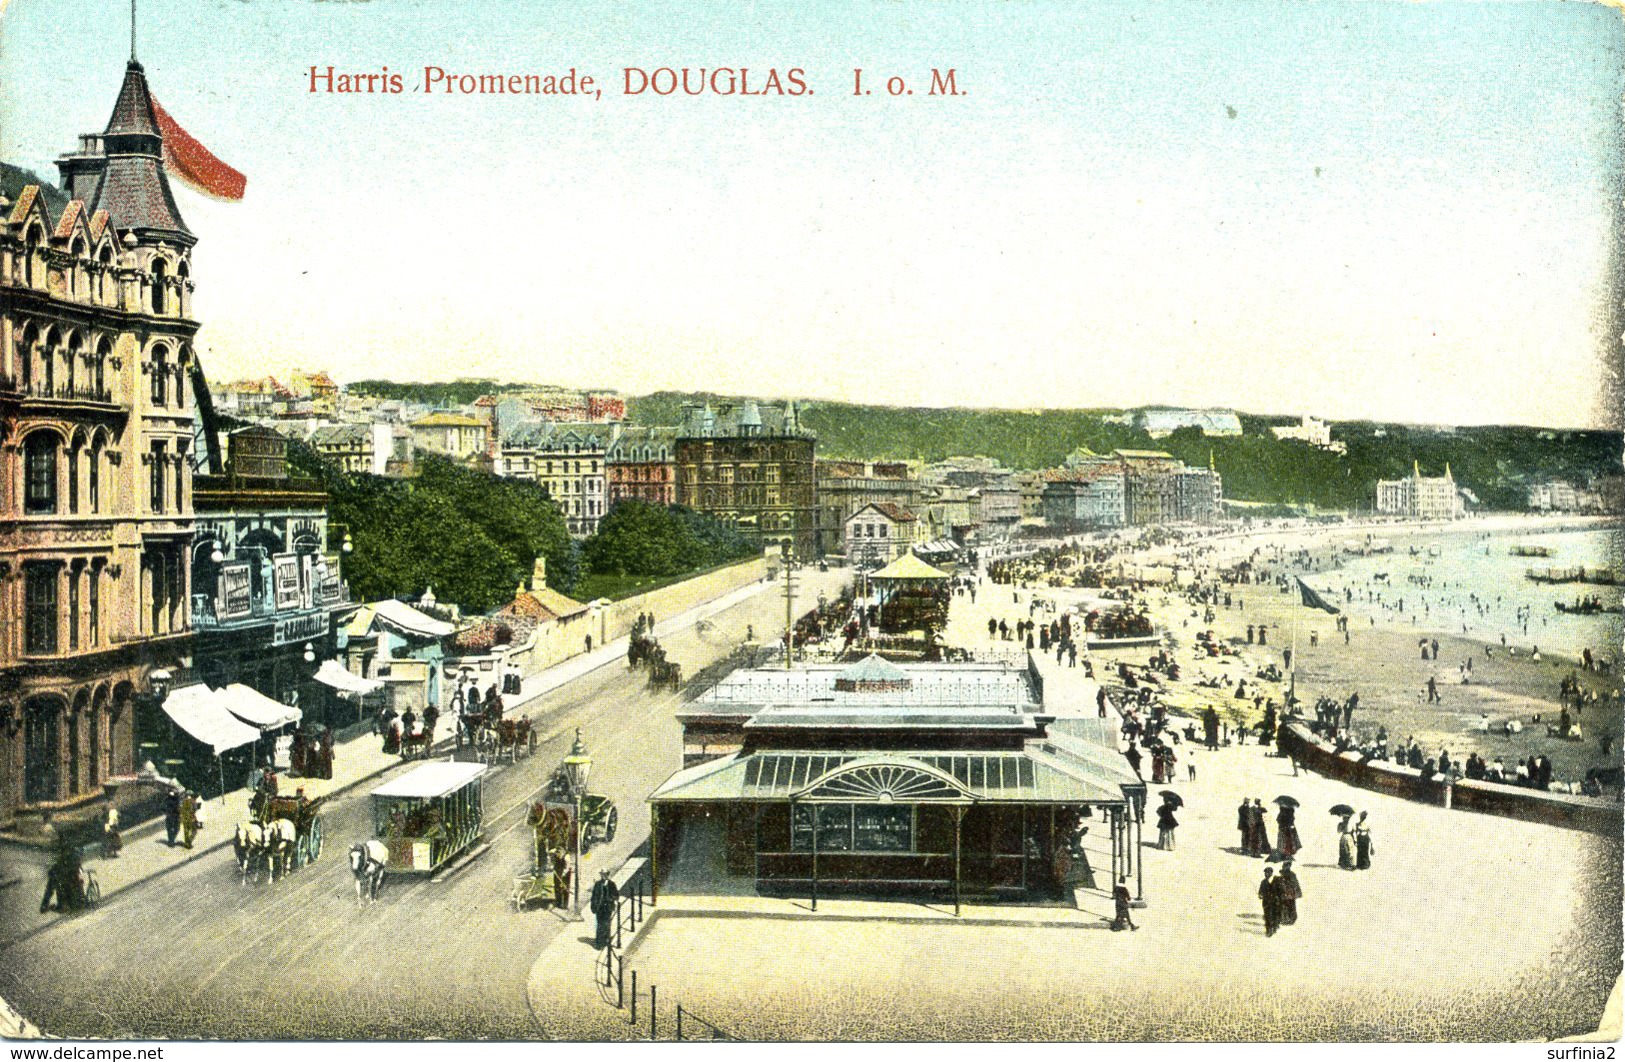 IOM - DOUGLAS - HARRIS PROMENADE 1907  Iom226 - Ile De Man